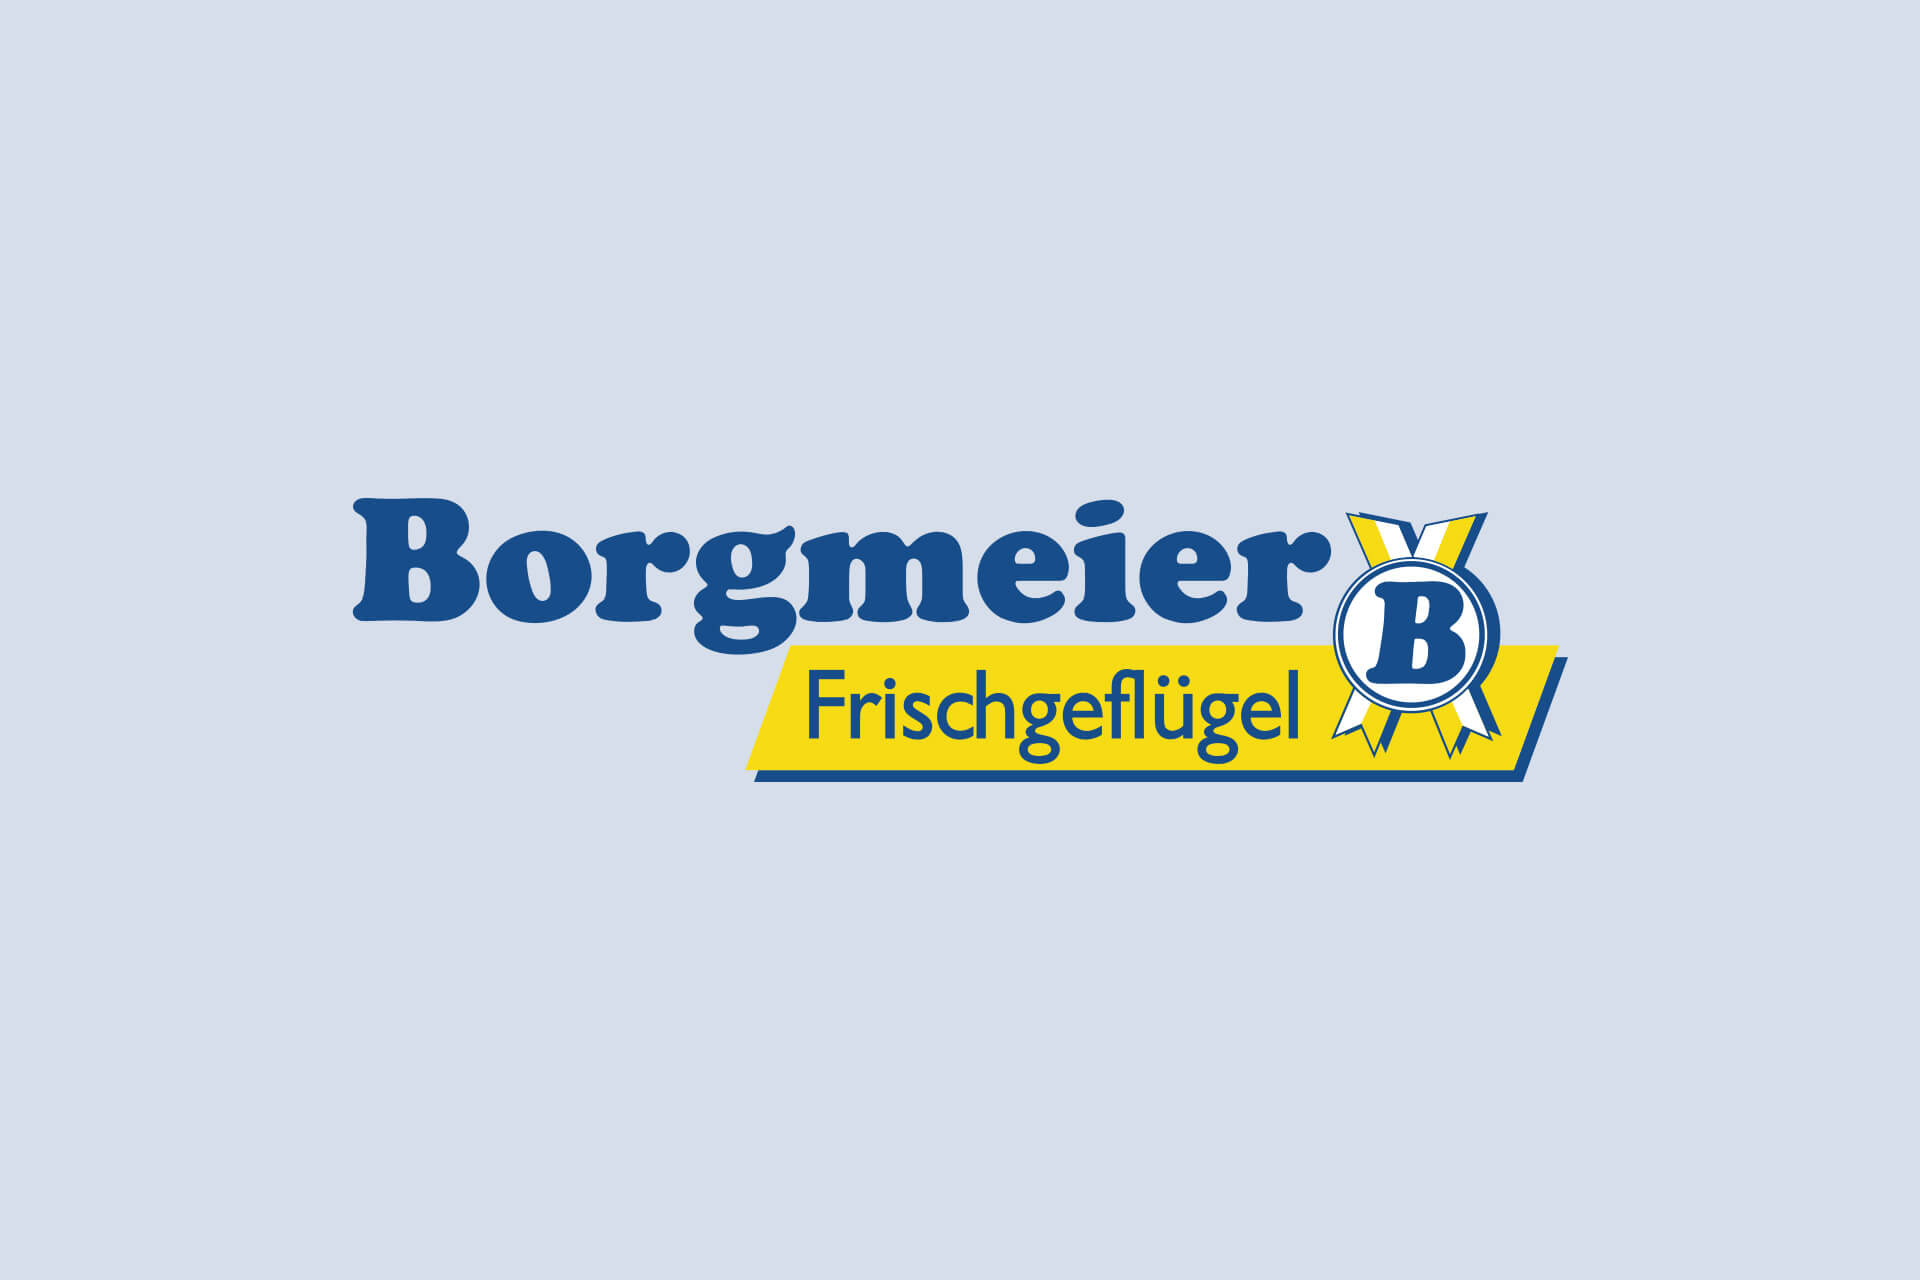 (c) Borgmeier.com